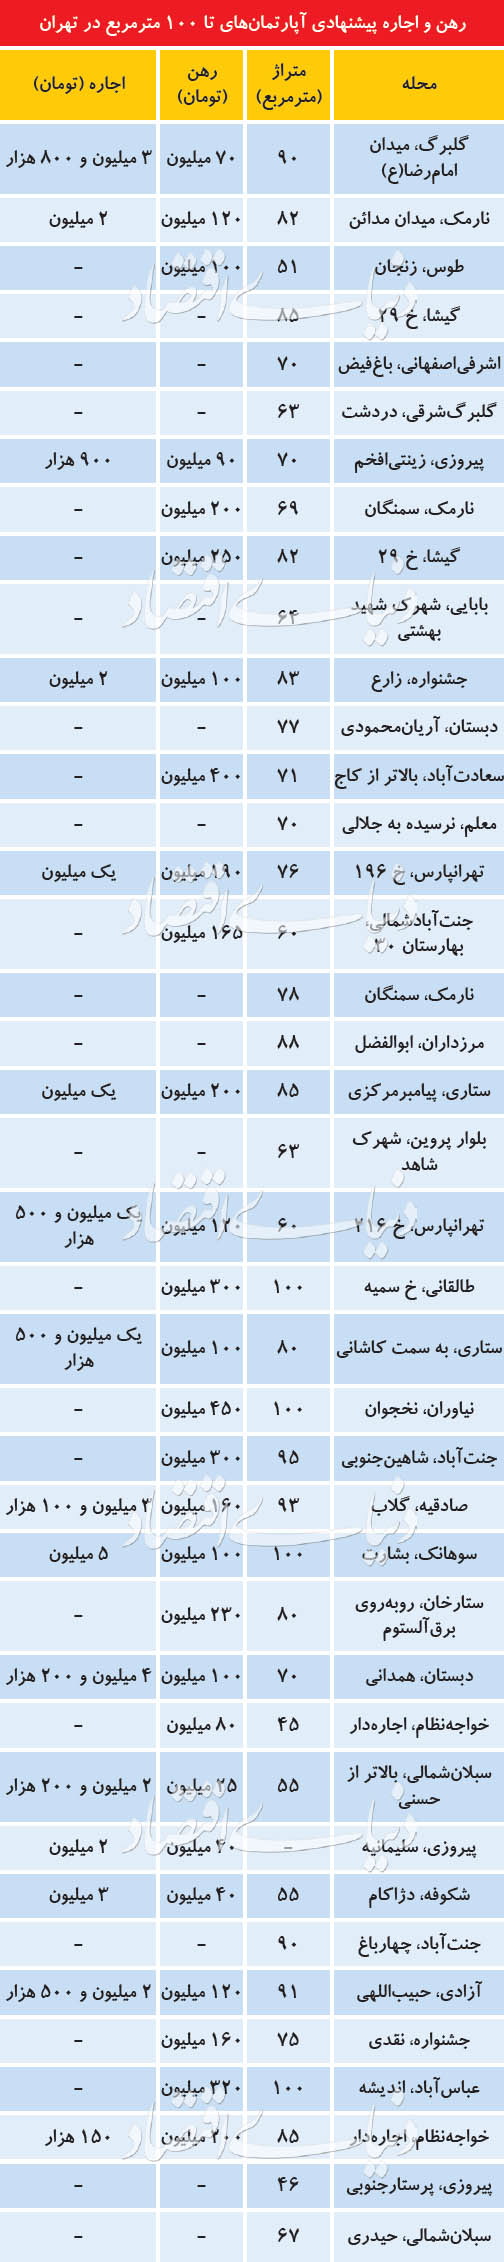 قیمت خرید خانه و نرخ اجاره مسکن در تهران امروز 2 تیر 99